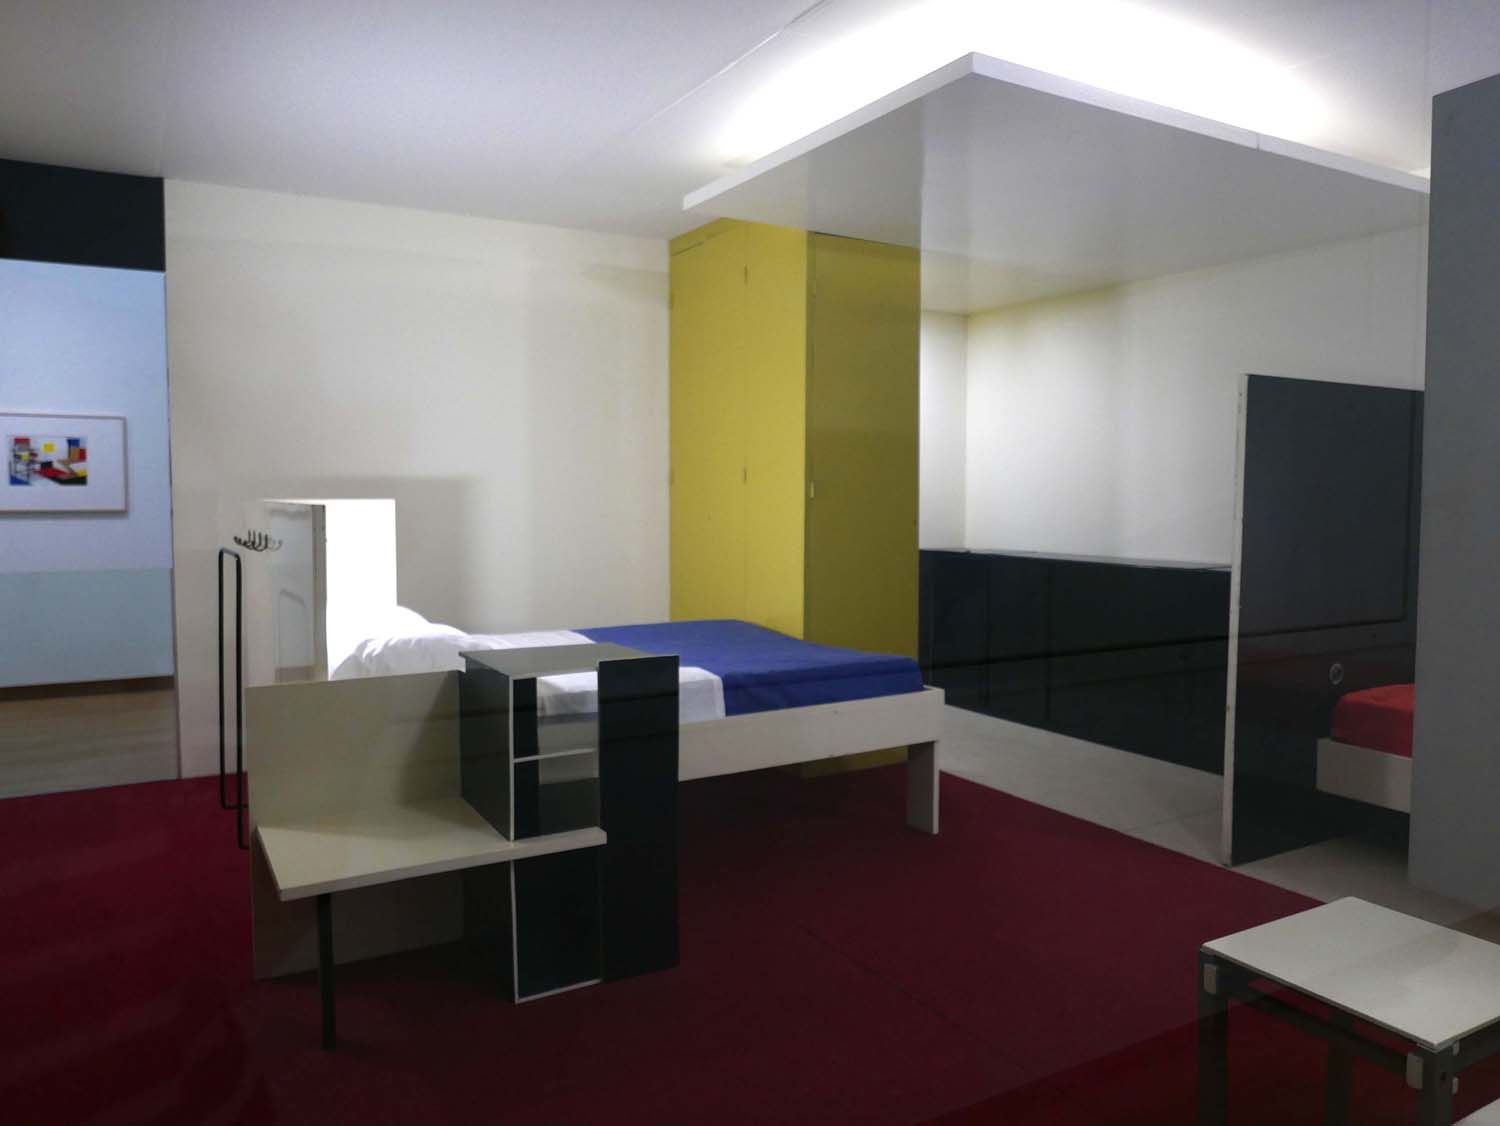 Gerrit Rietveld: Harrenstein slaapkamer, 1926